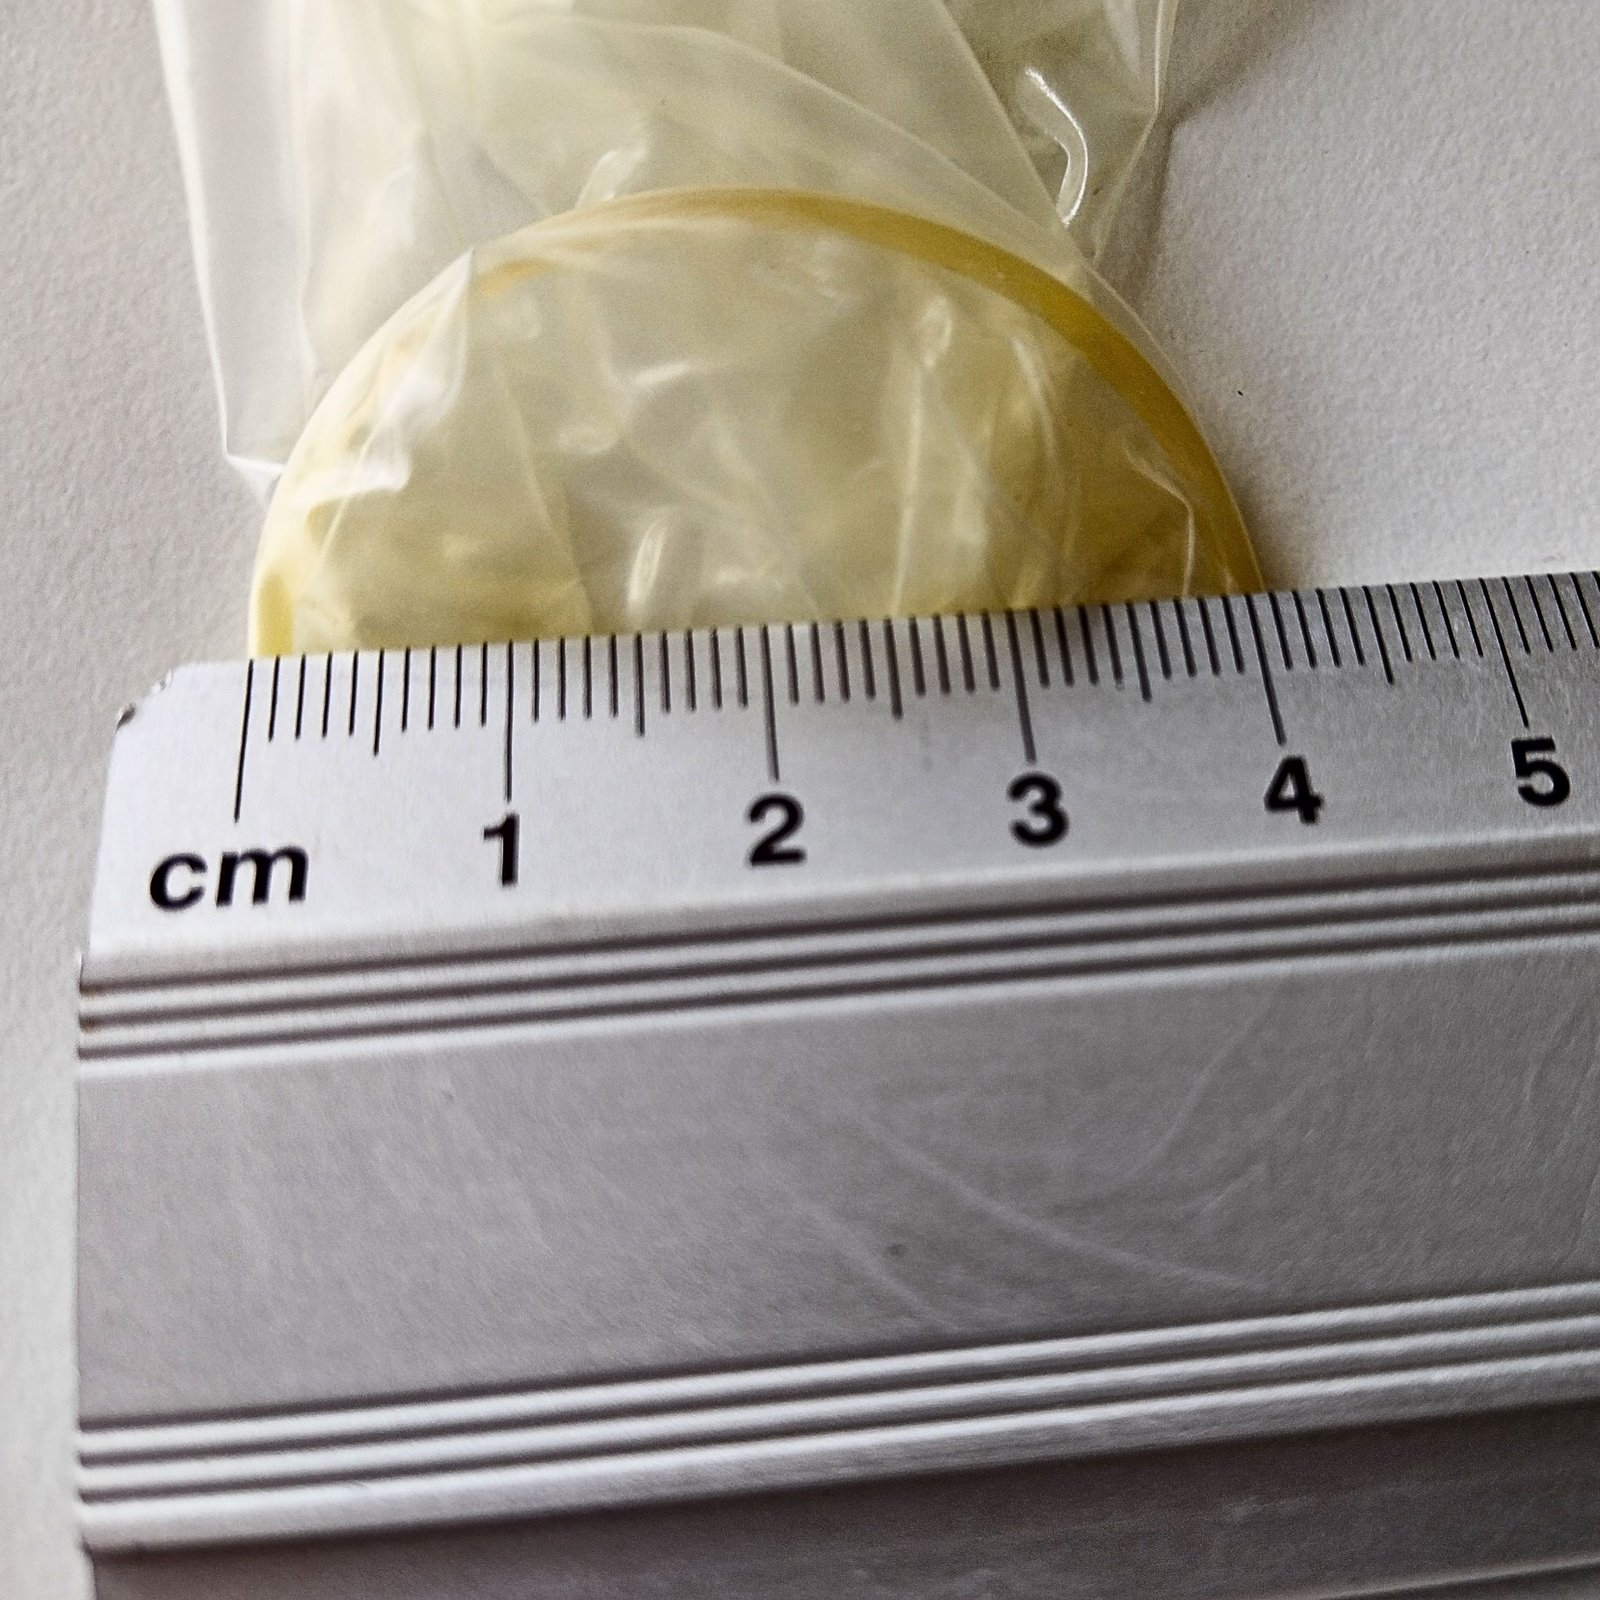 Prezervatif çapının ölçülmesi